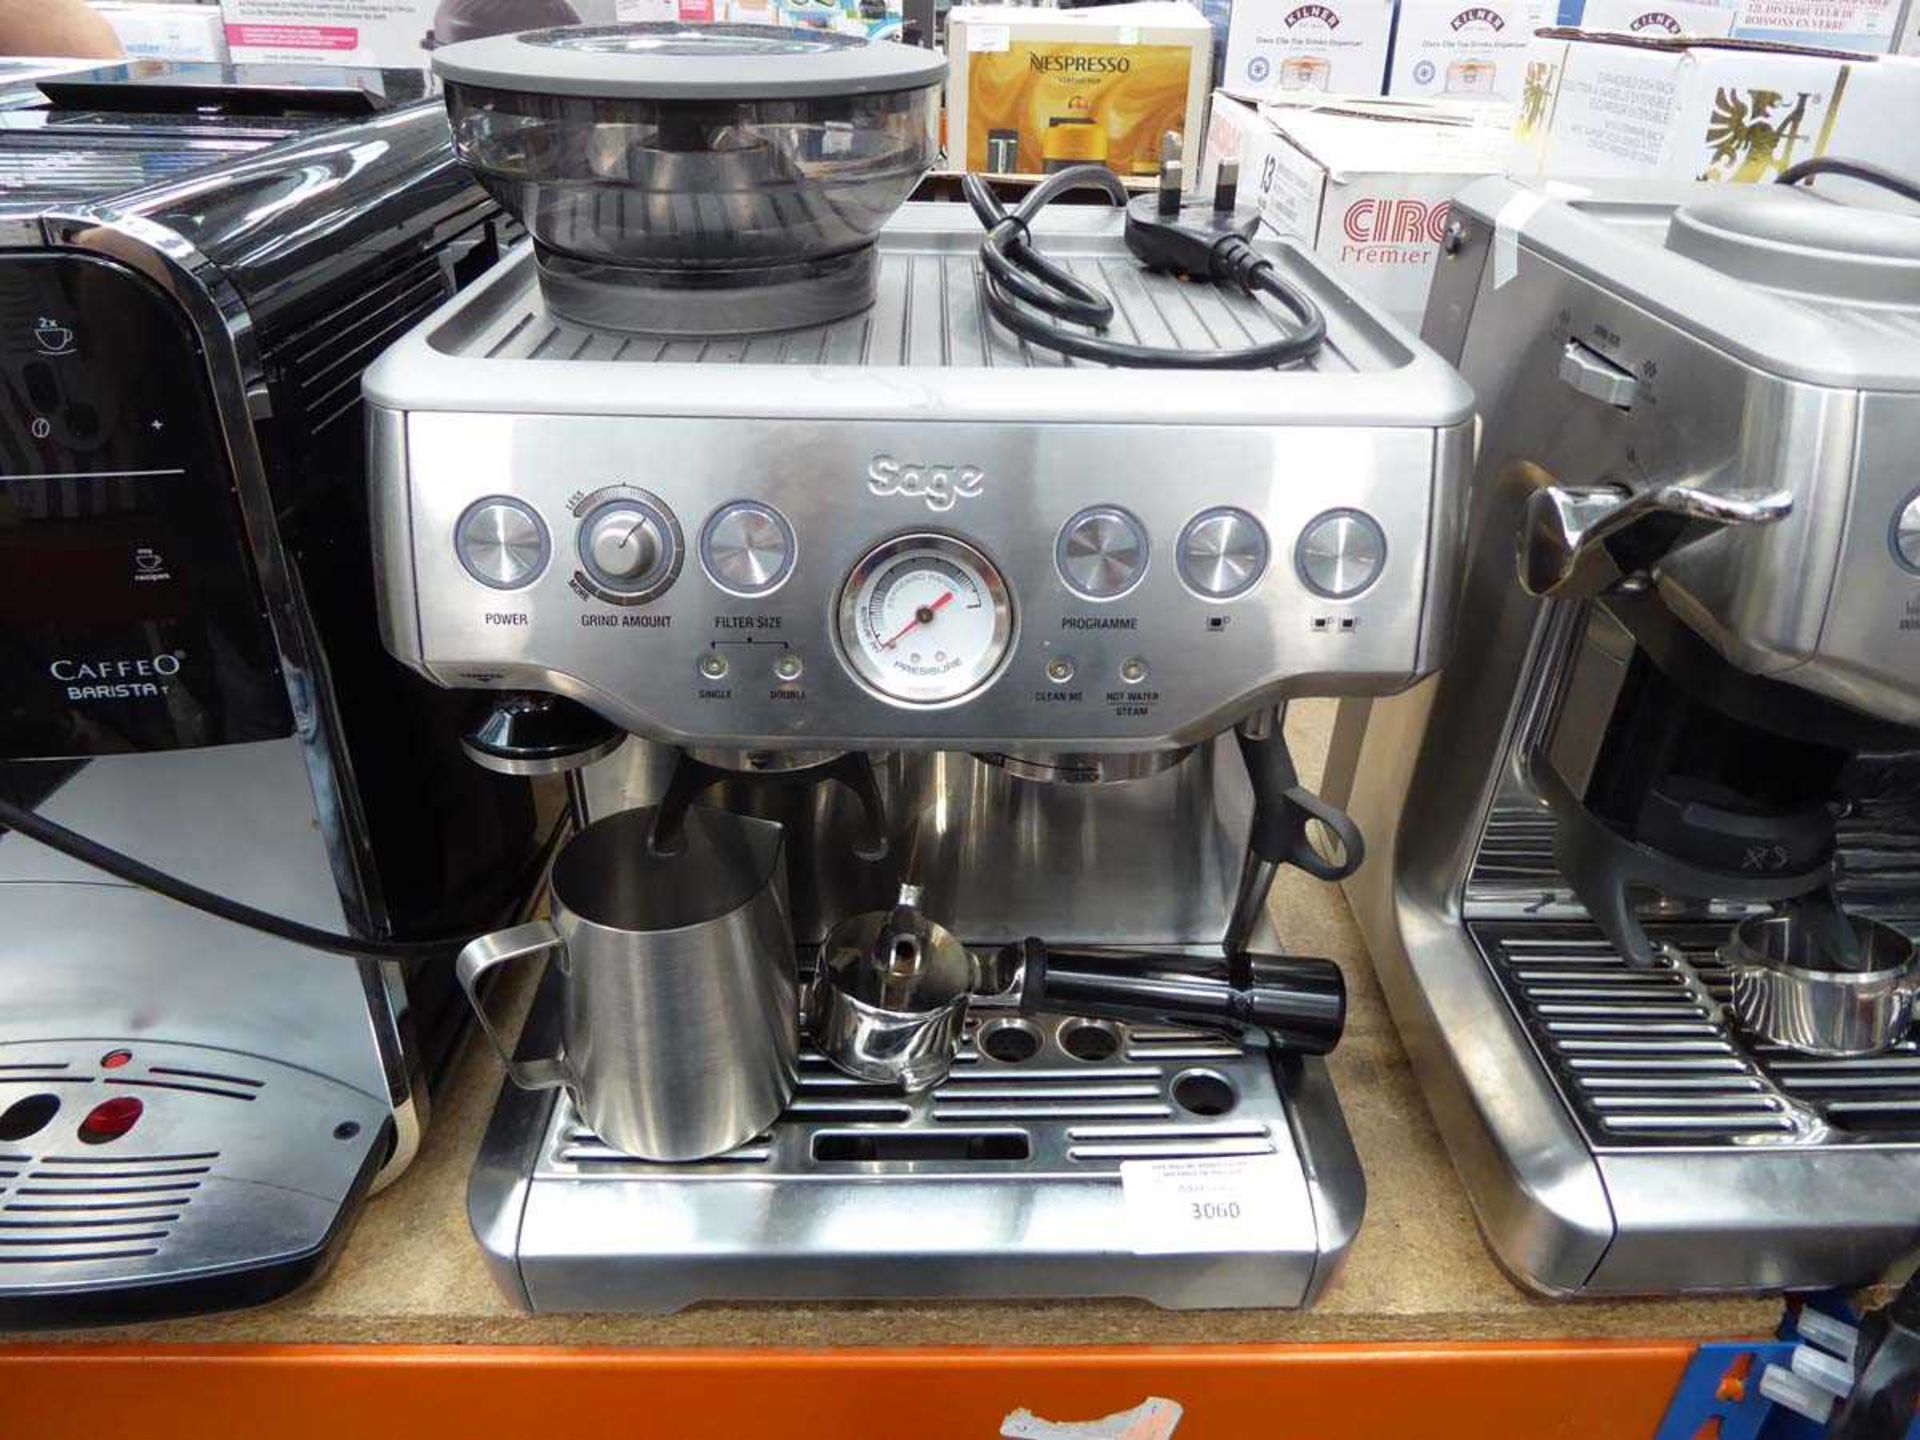 +VAT Unboxed Sage Barista Express coffee machine